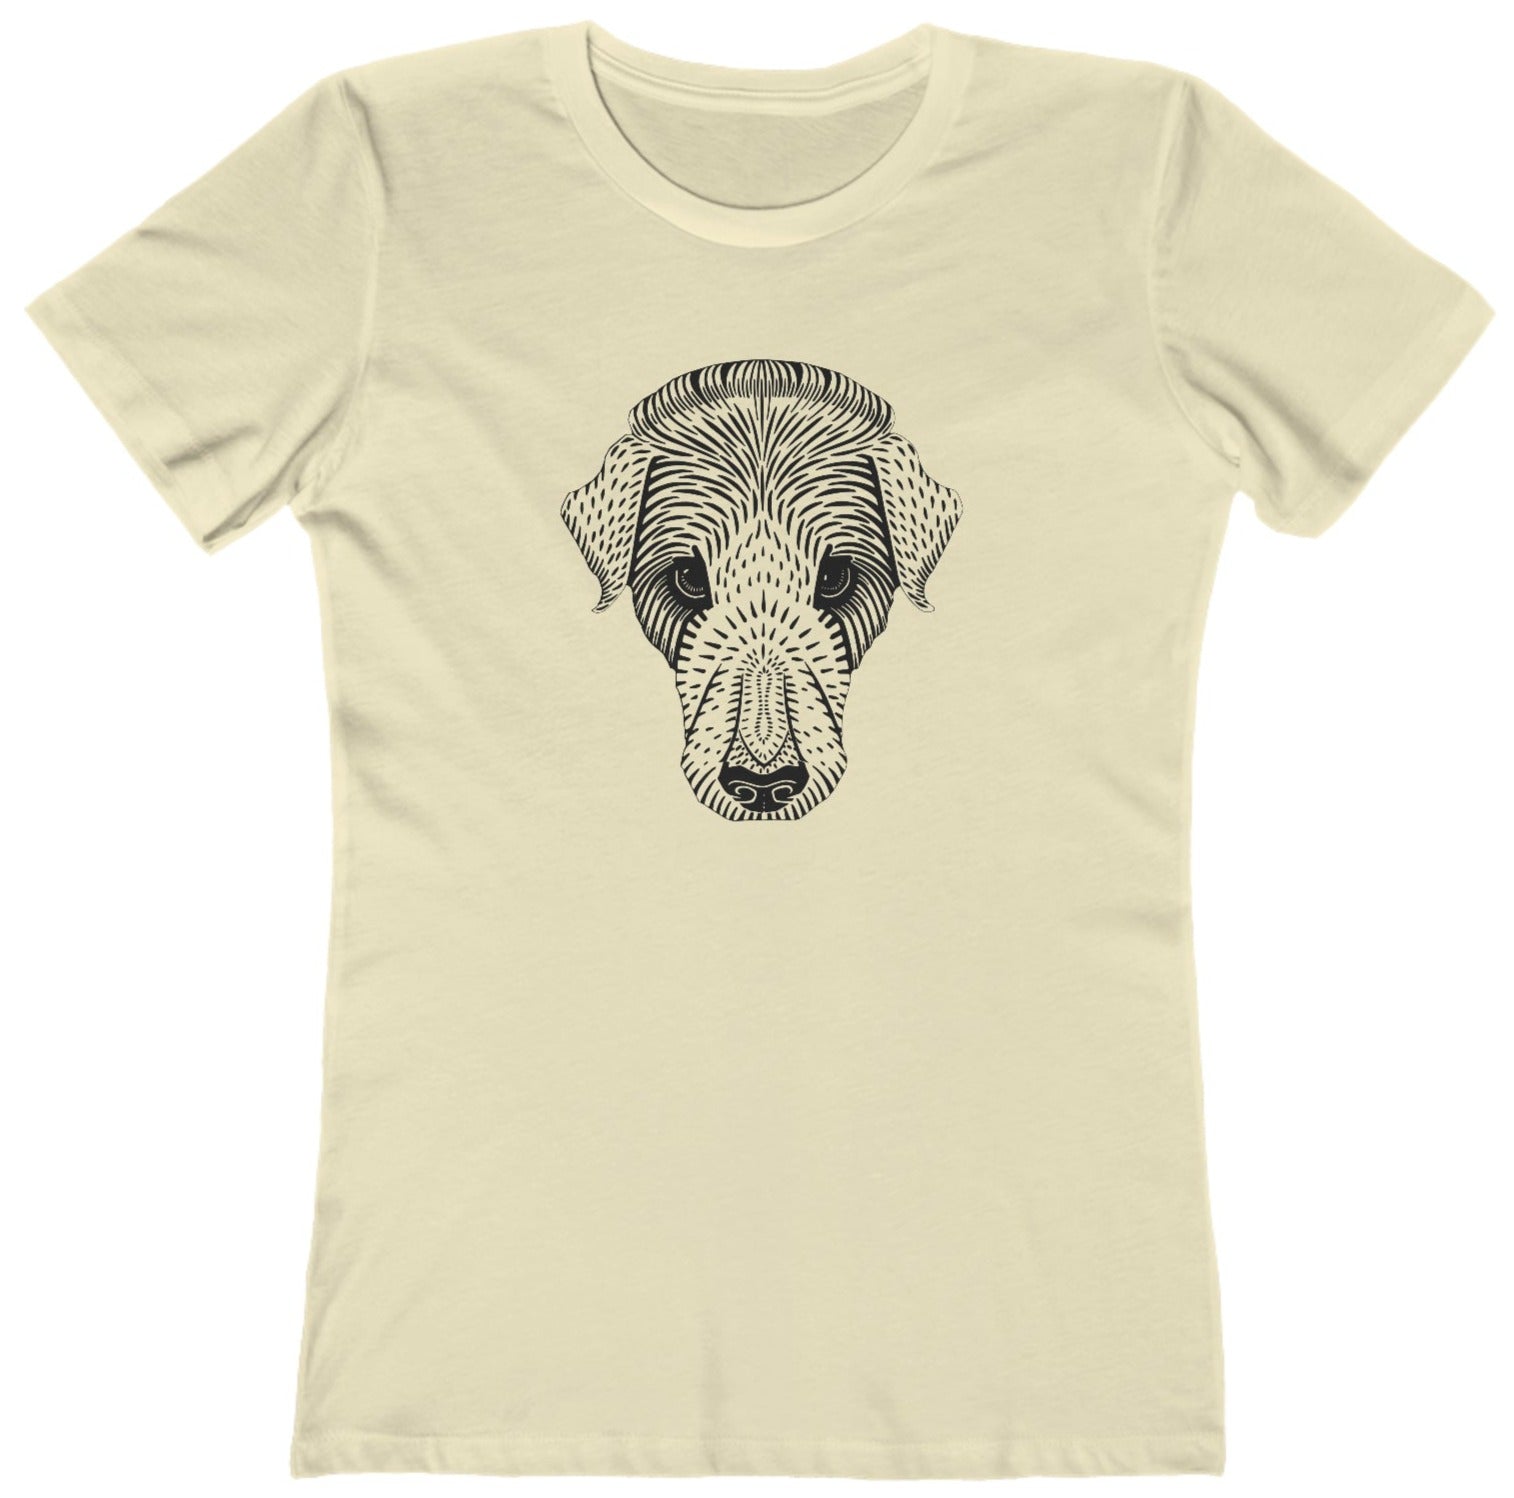 Dog best friend t shirt